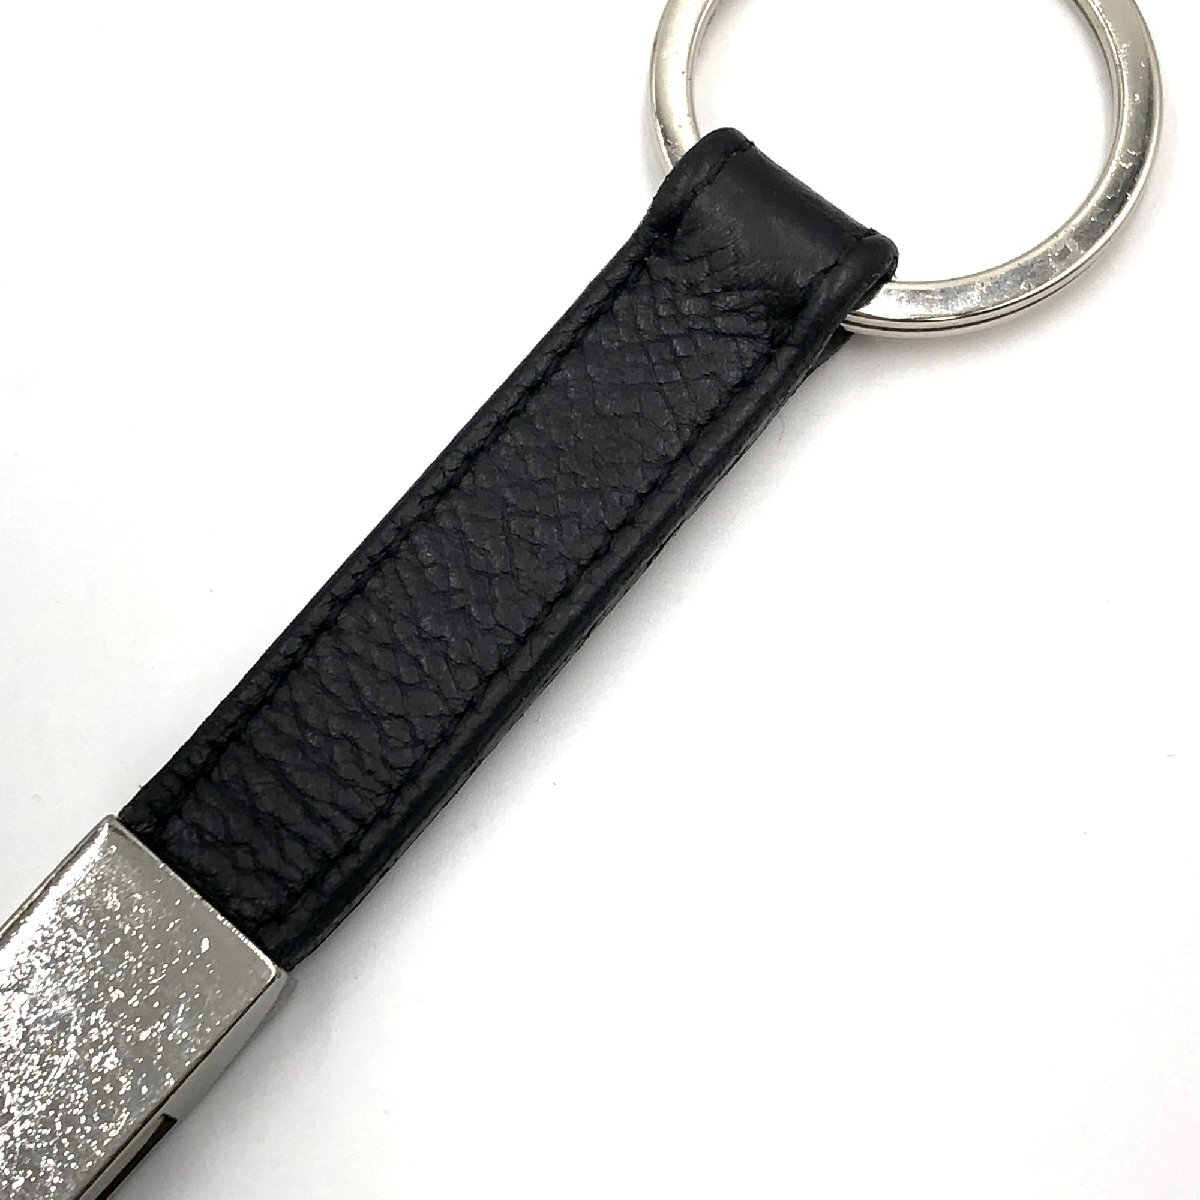  Болгария ... BVLGARI  ключ  кольцо    лого    простой   высококачественный  чувство    черный    серебристый   черный    серебро   доставка бесплатно  h0216aq01735  подержанный товар   бу одежда   брэнд  бу одежда DB